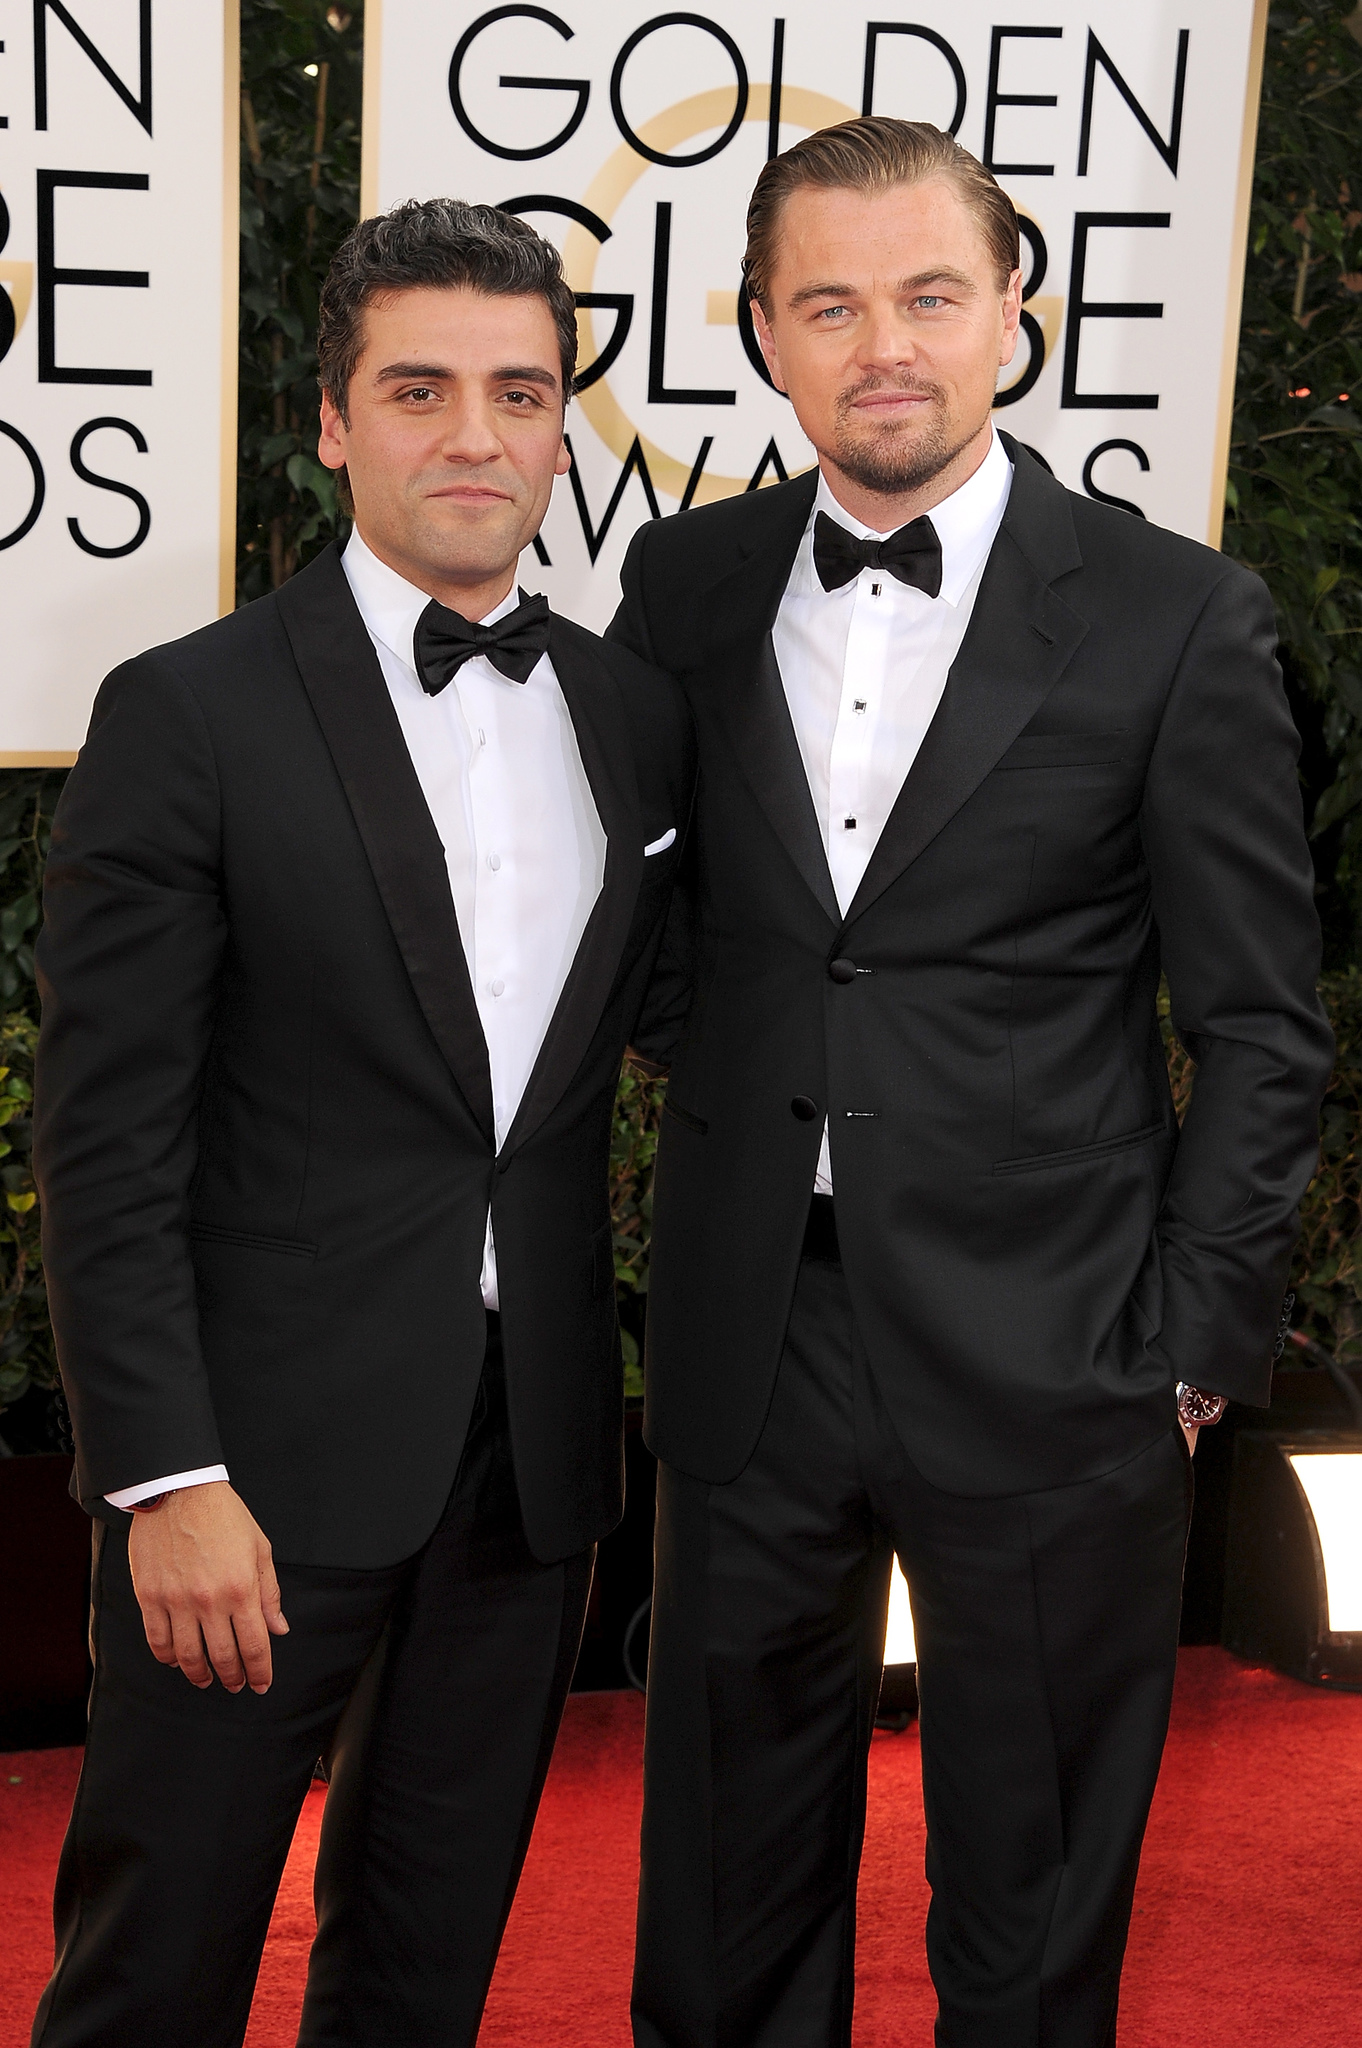 Leonardo DiCaprio and Oscar Isaac